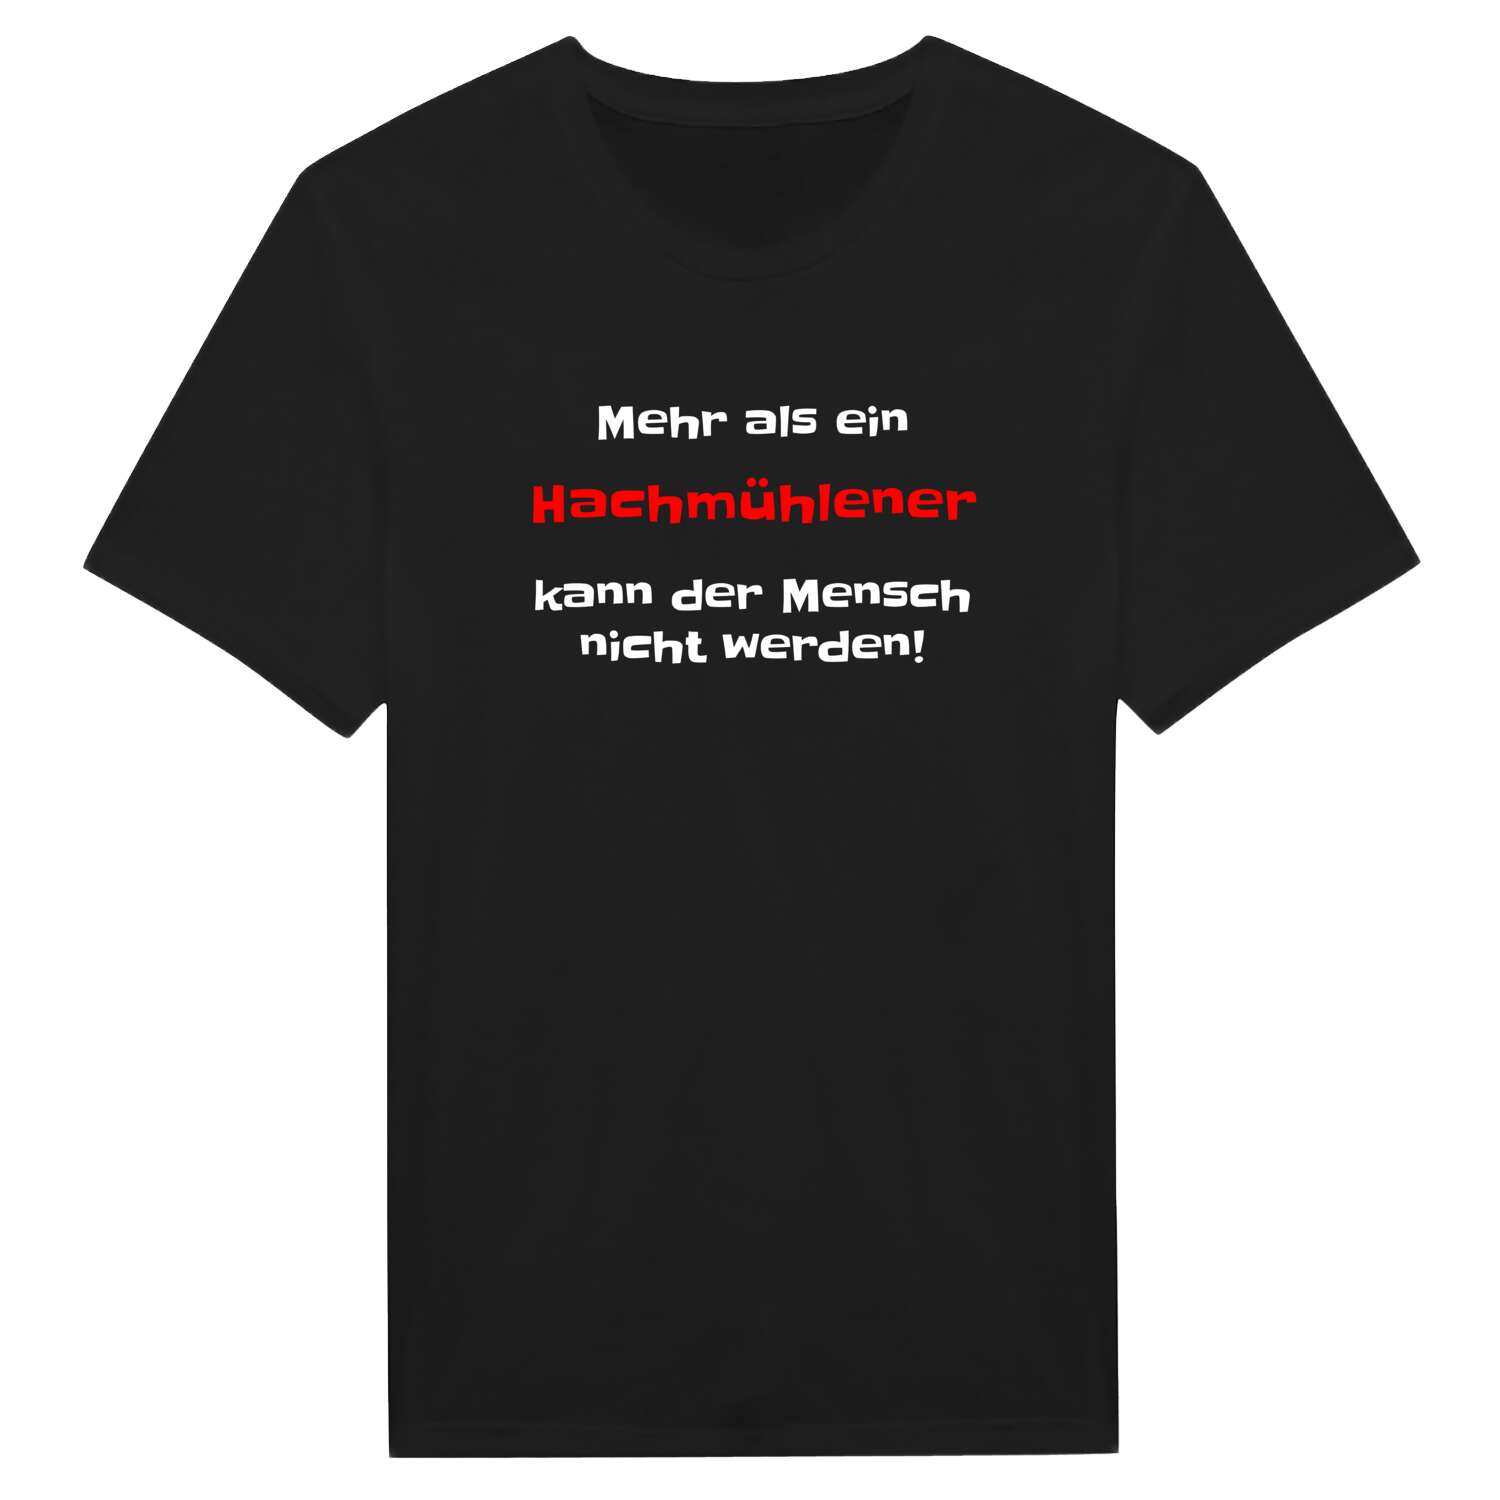 Hachmühlen T-Shirt »Mehr als ein«